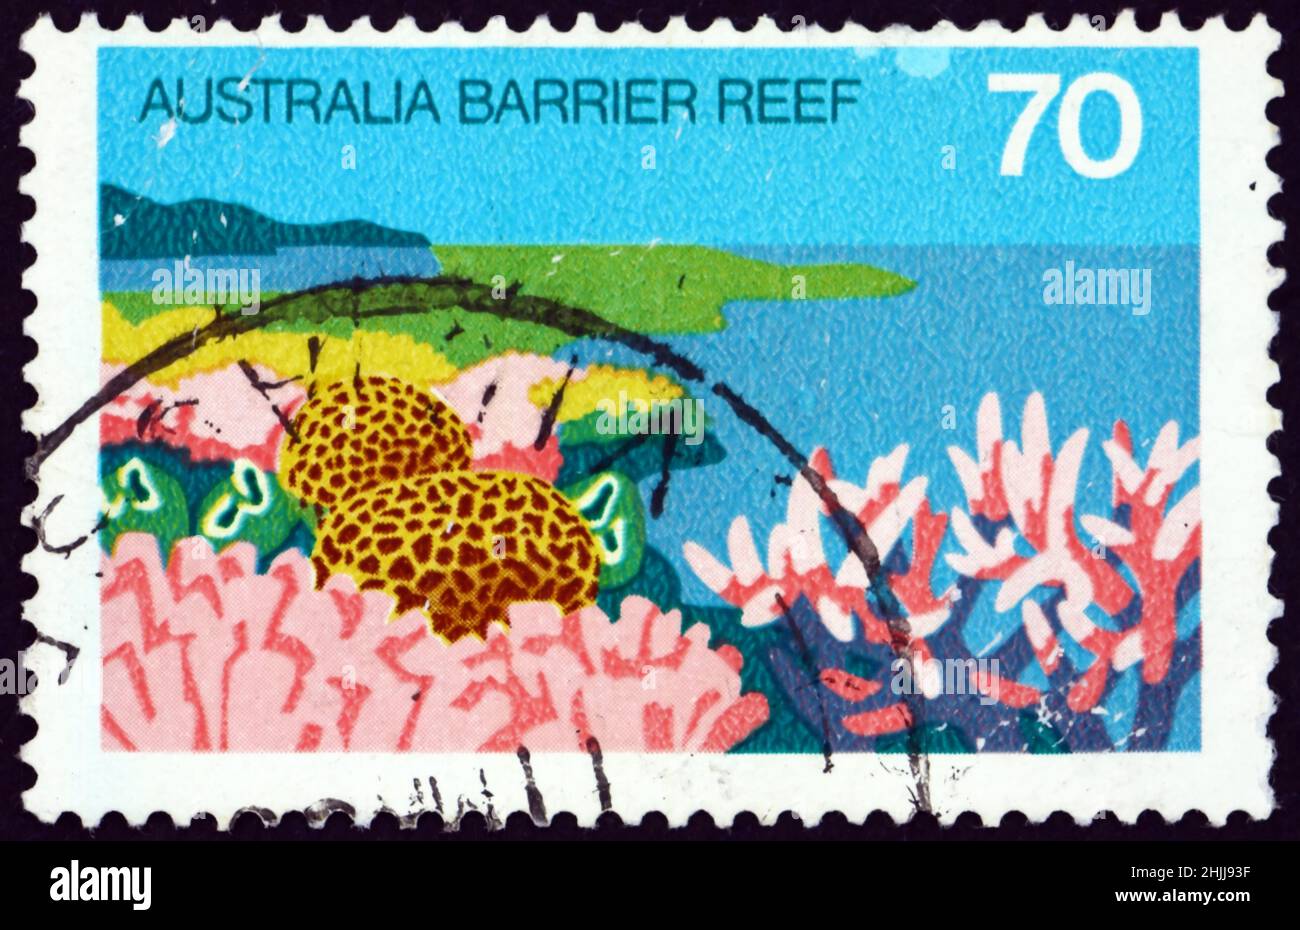 AUSTRALIEN - UM 1976: Eine in Australien gedruckte Marke zeigt, dass das Great Barrier Reef, Queensland, das größte Korallenriffsystem der Welt ist, um 1976 Stockfoto